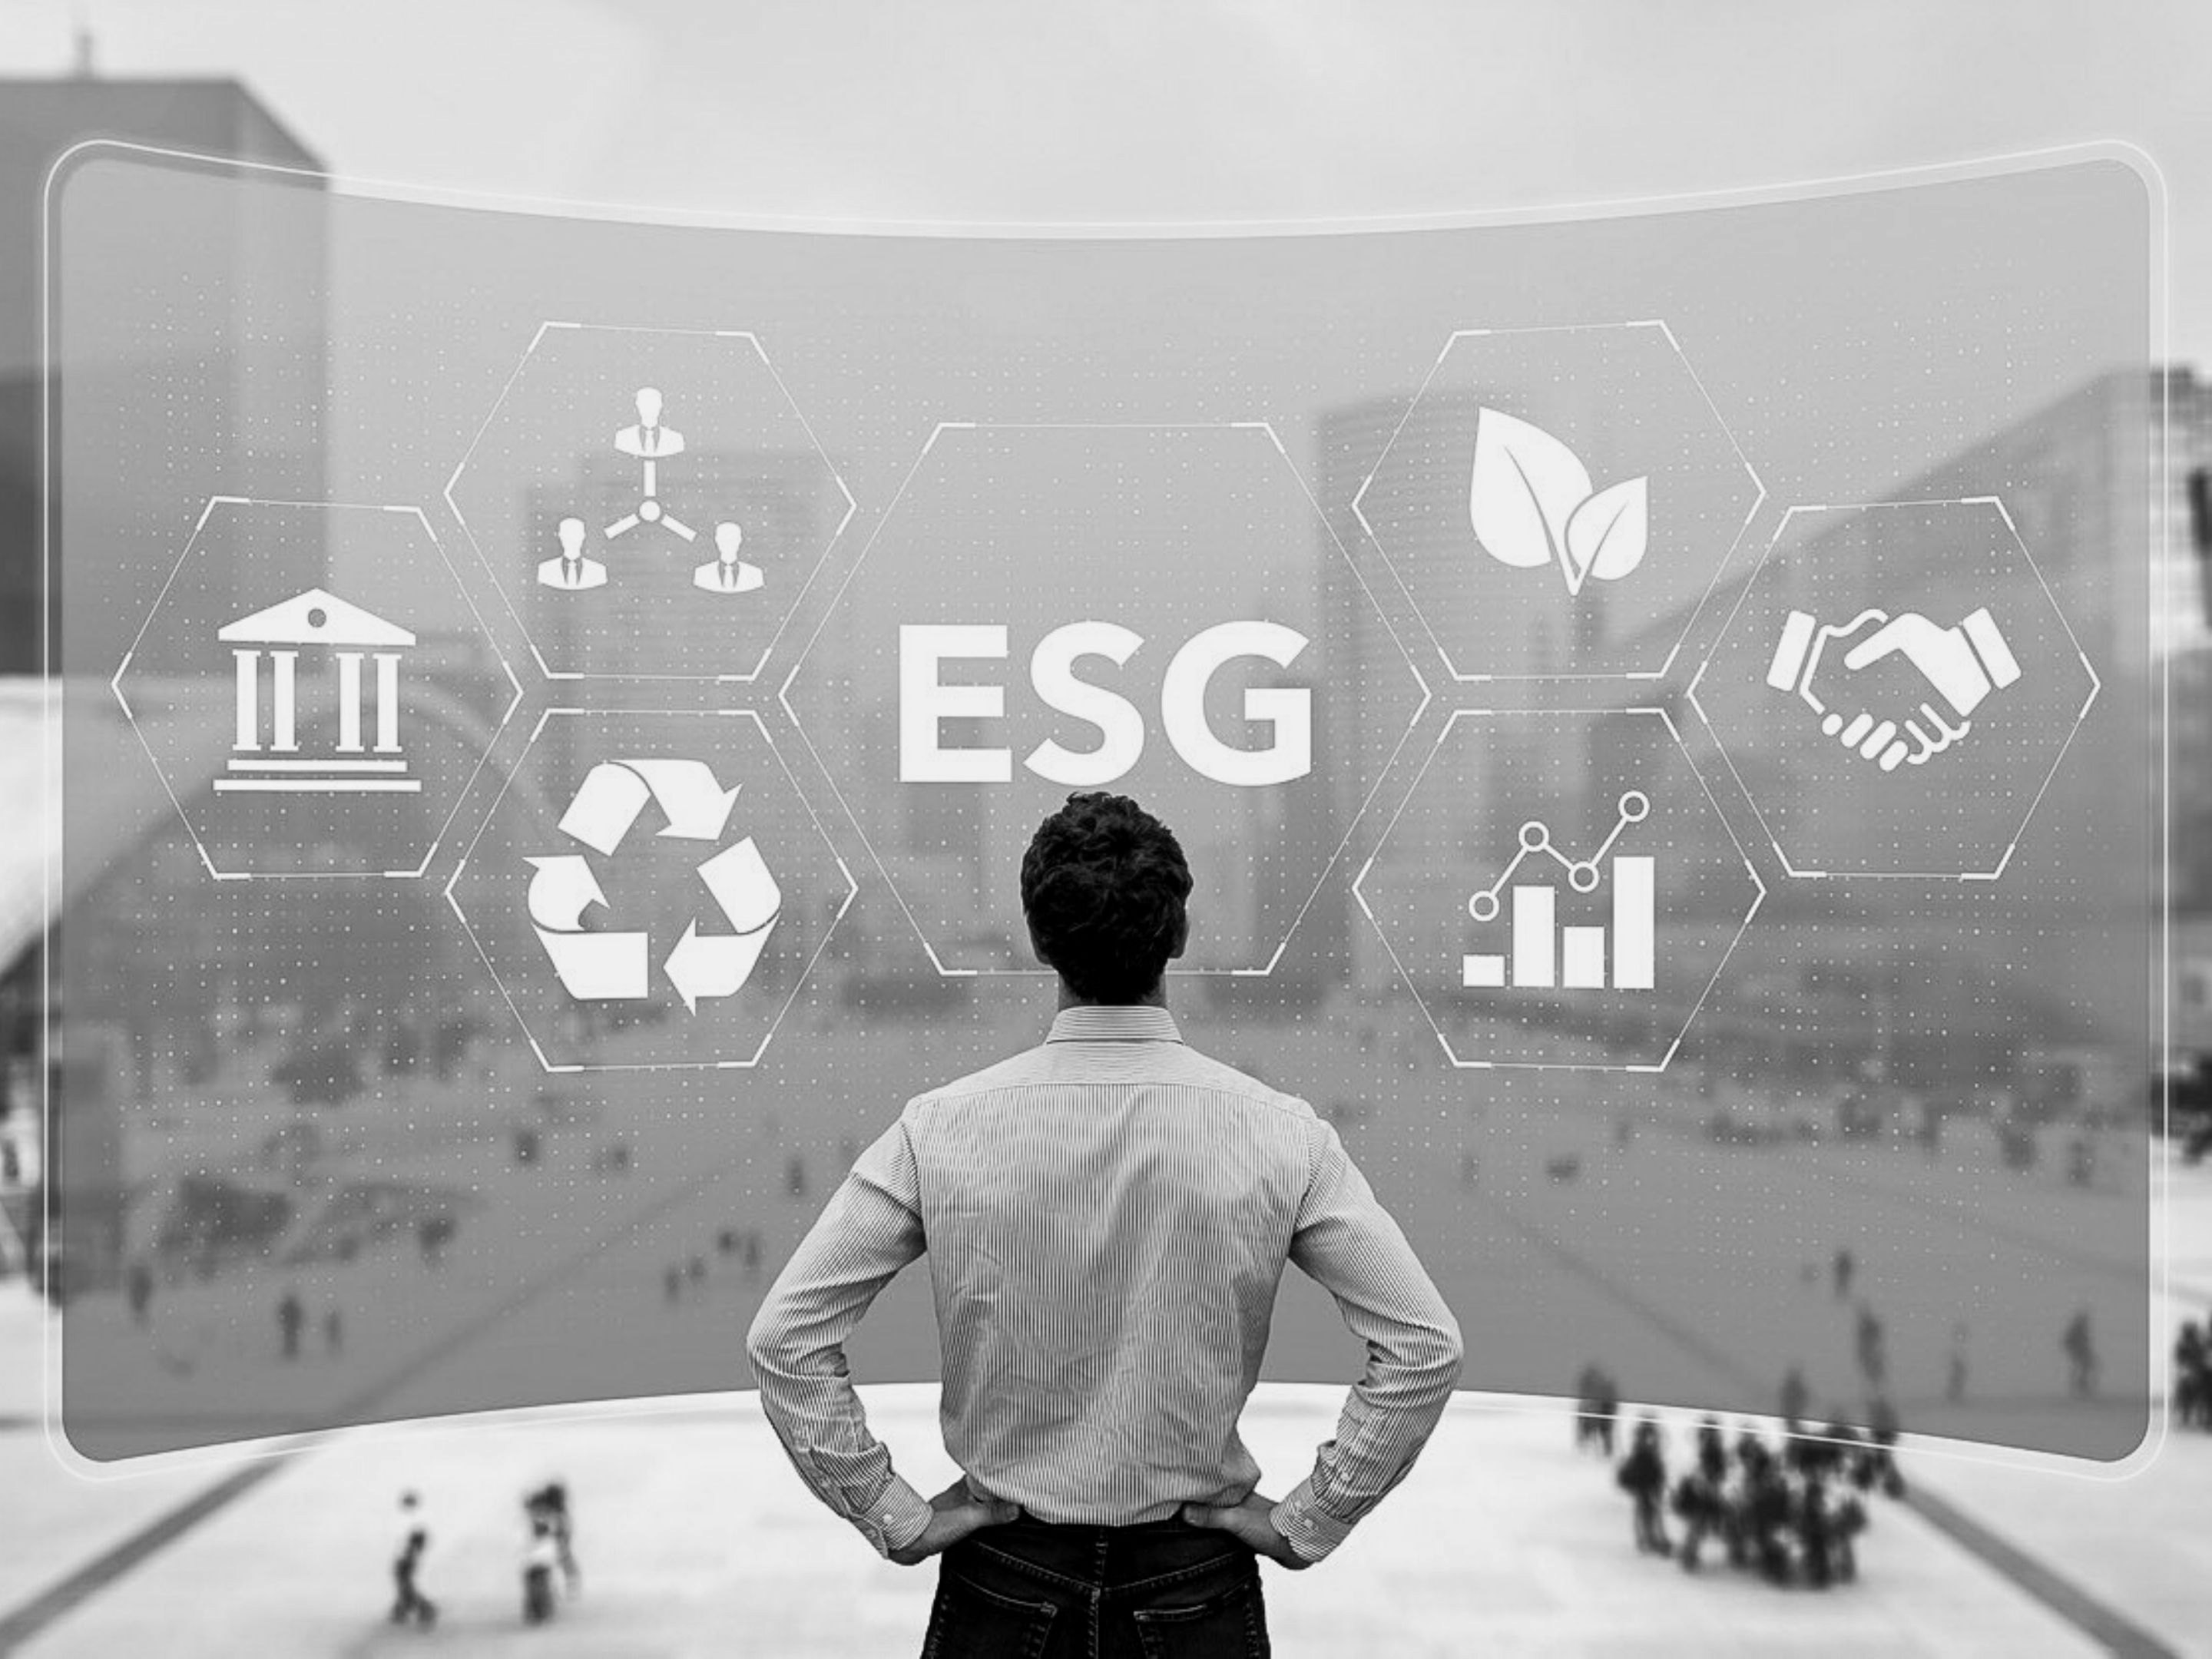 Mann steht vor einem großen Display mit der Aufschrift ESG